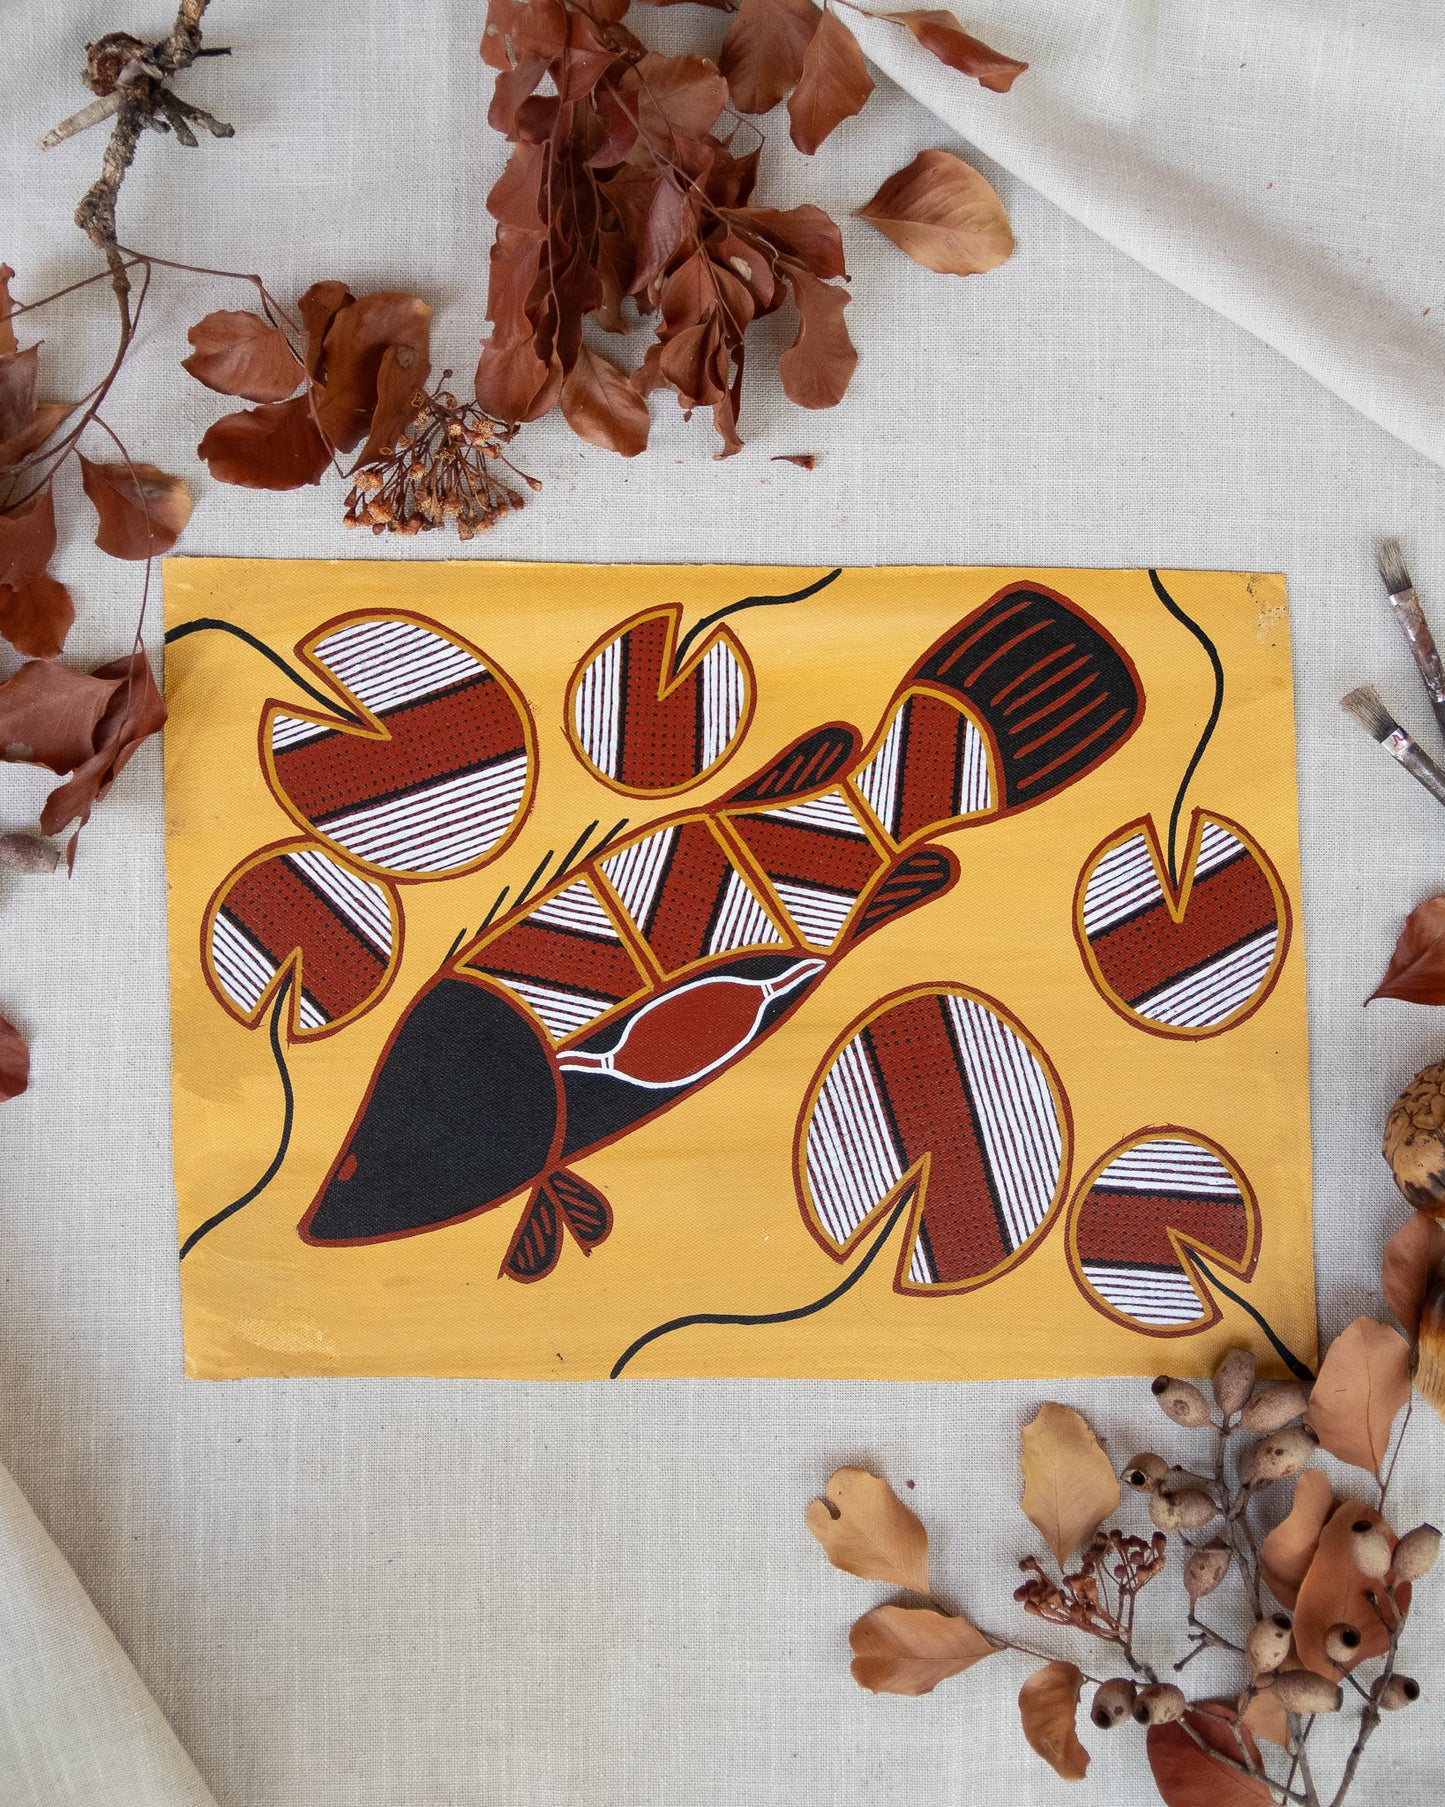 Authentic aboriginal artwork featuring barramundi